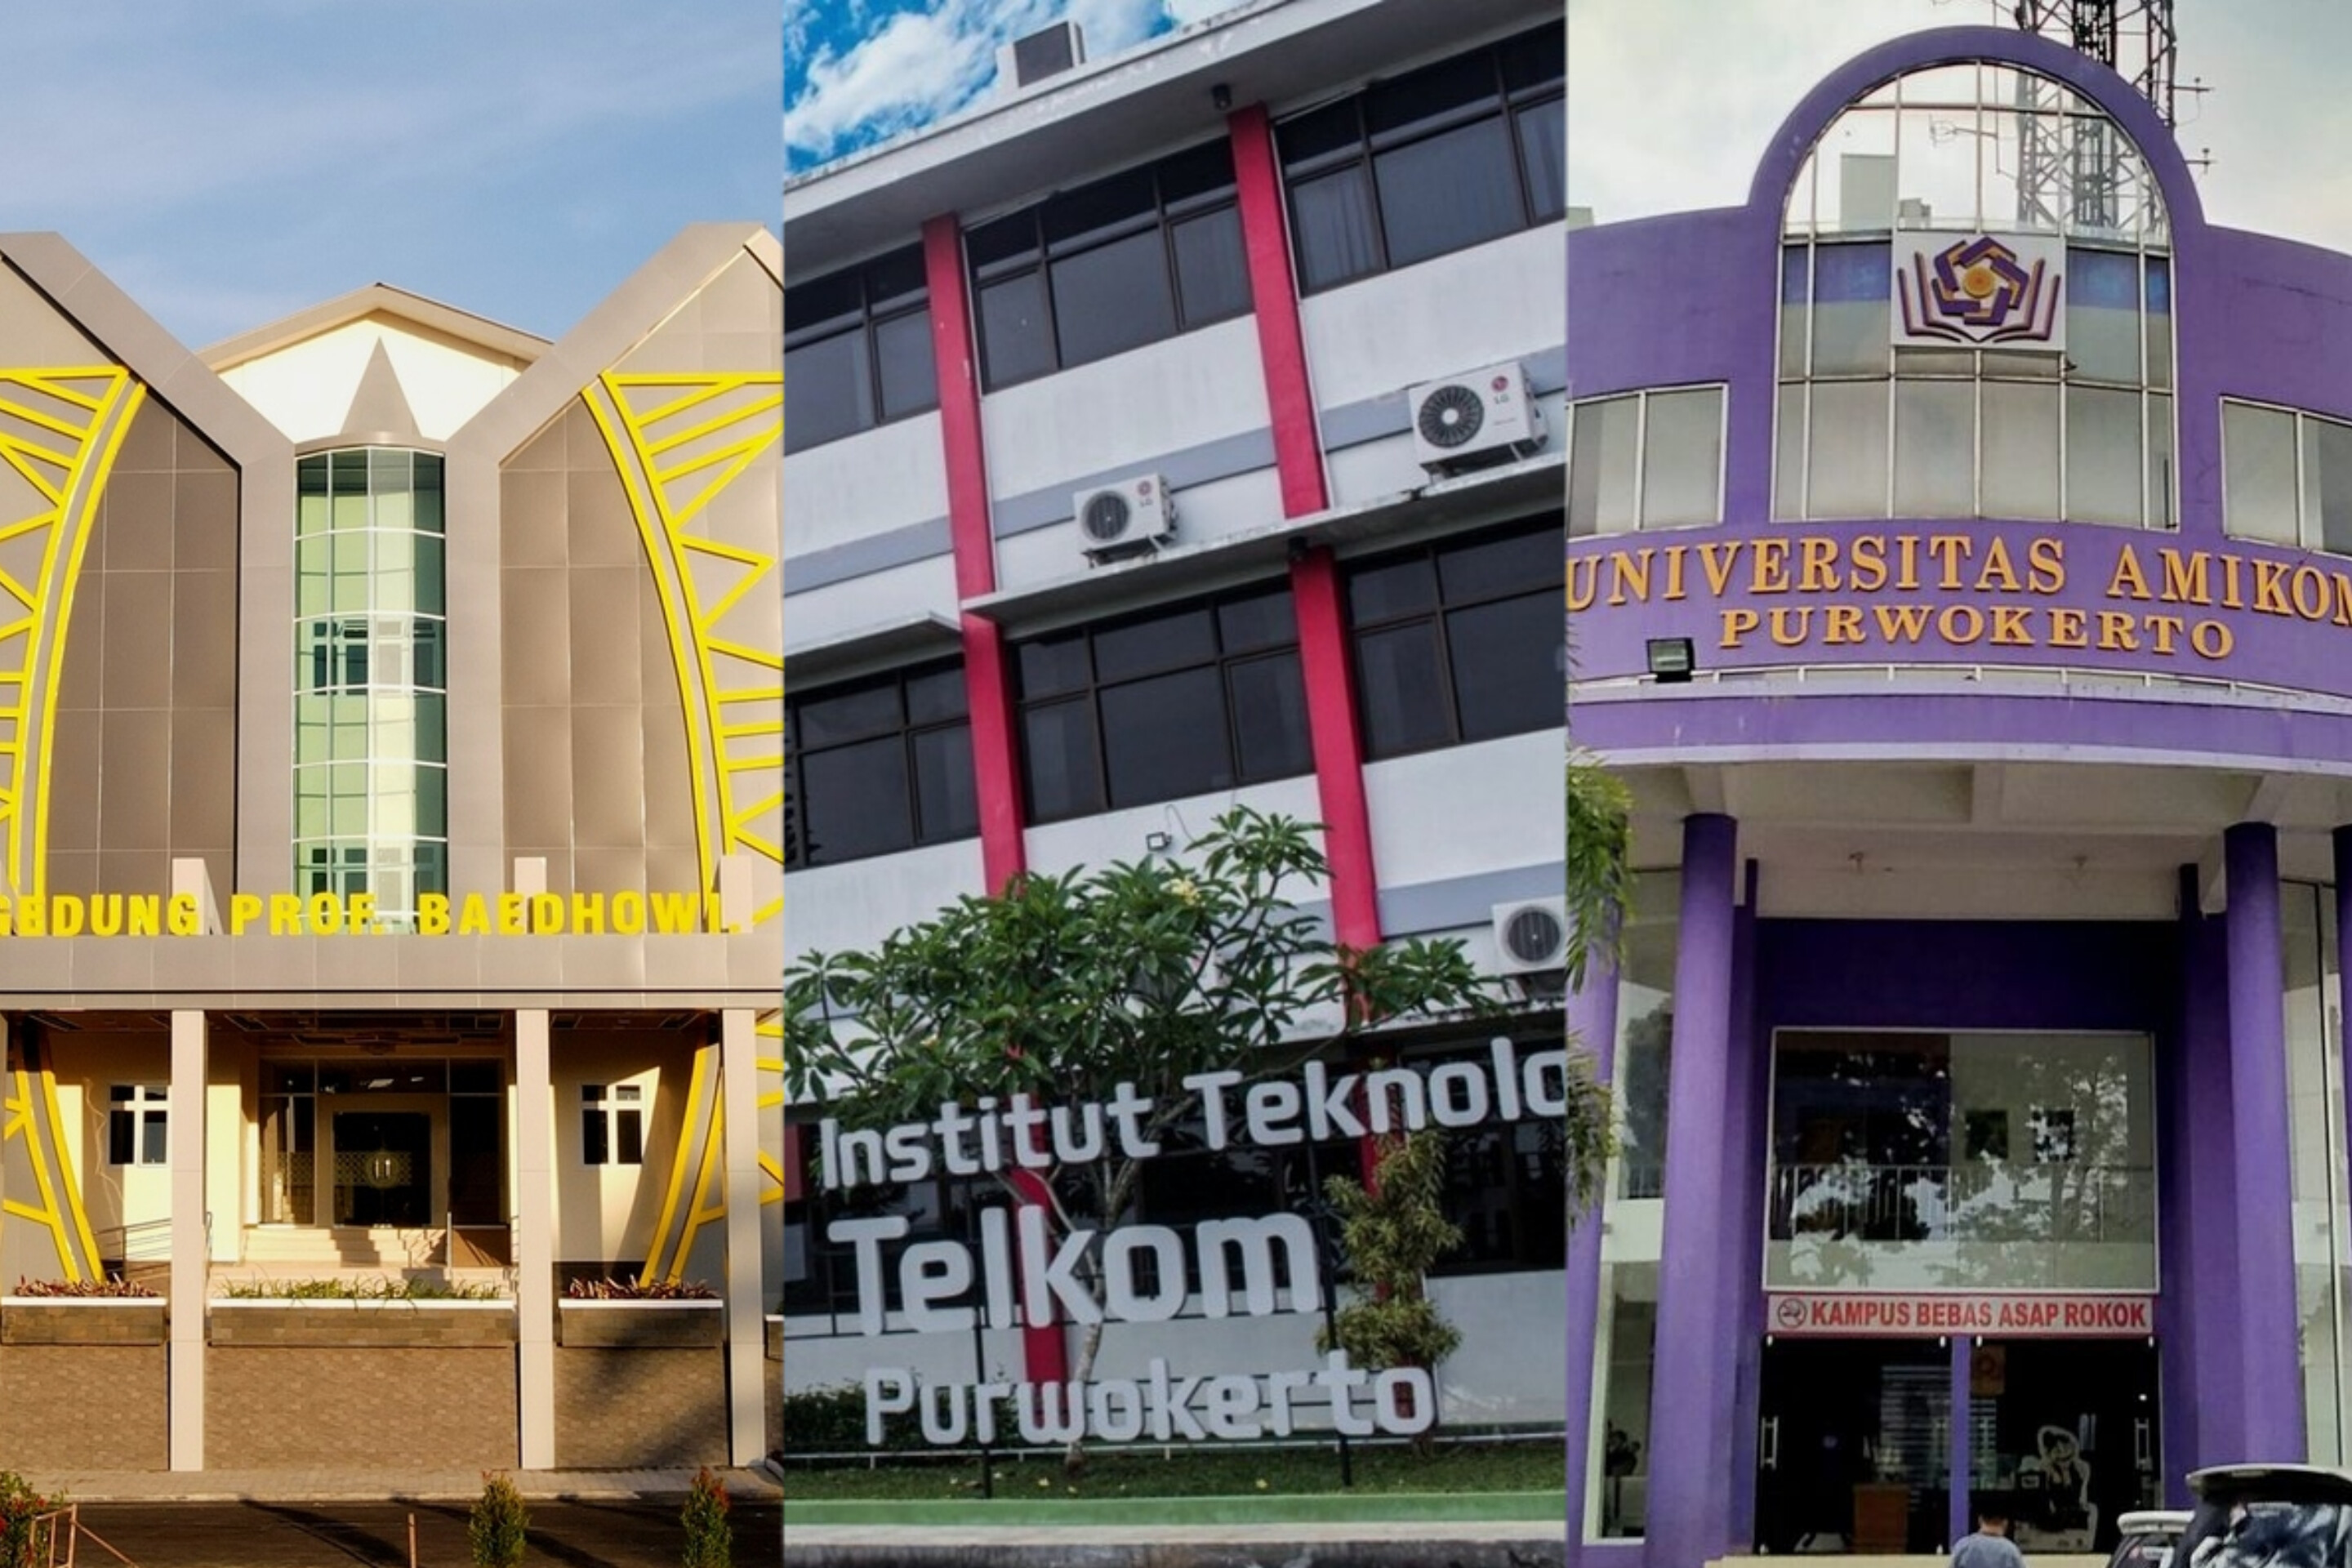 Deretan Kampus Swasta di Purwokerto Beserta Akreditasinya